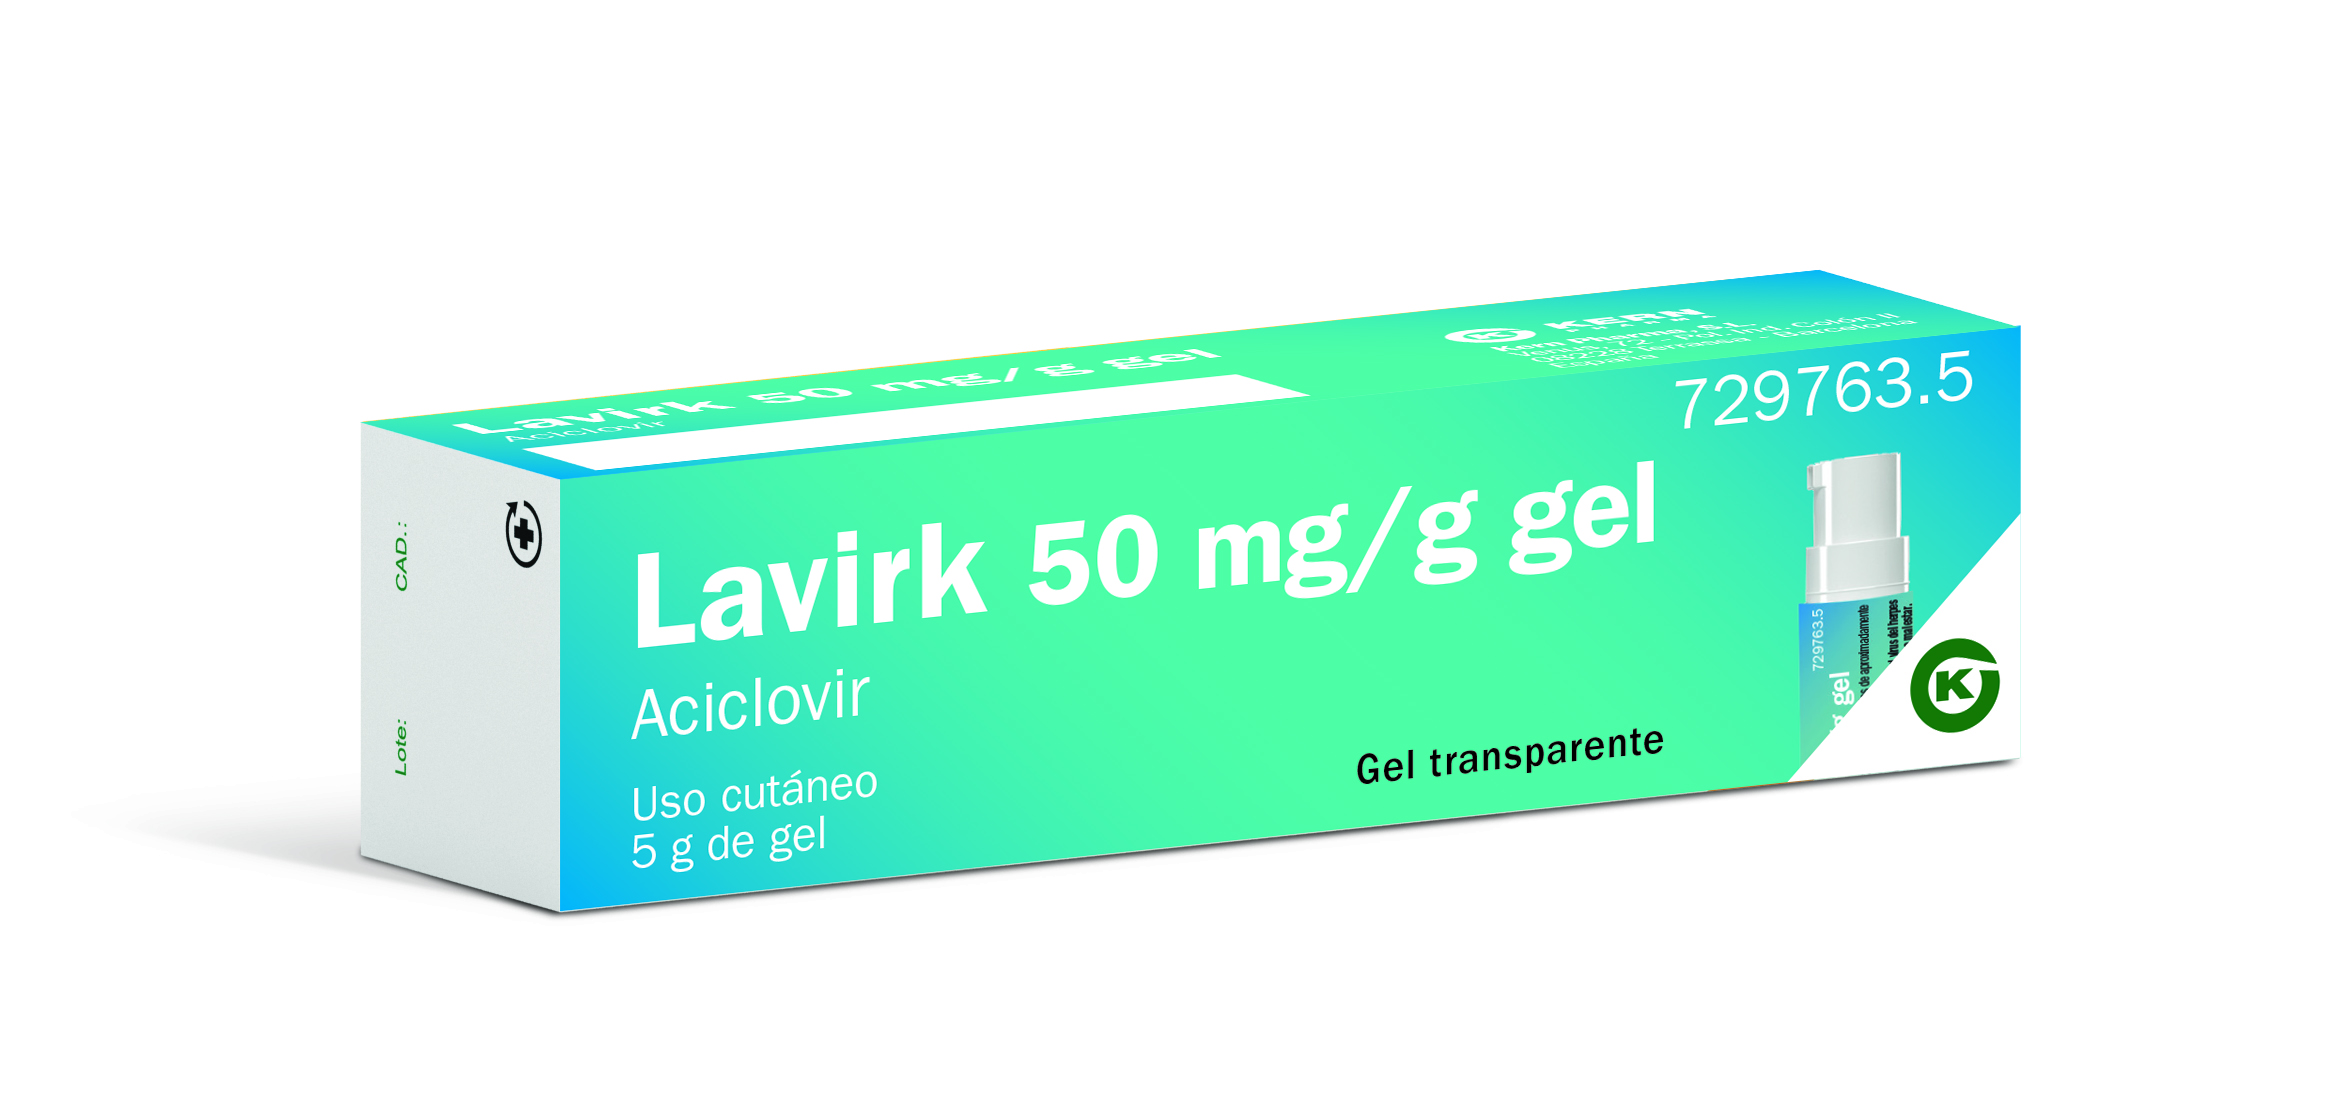 LAVIRK 50 mg/g gel, tubo de 5g con bomba dosificadora